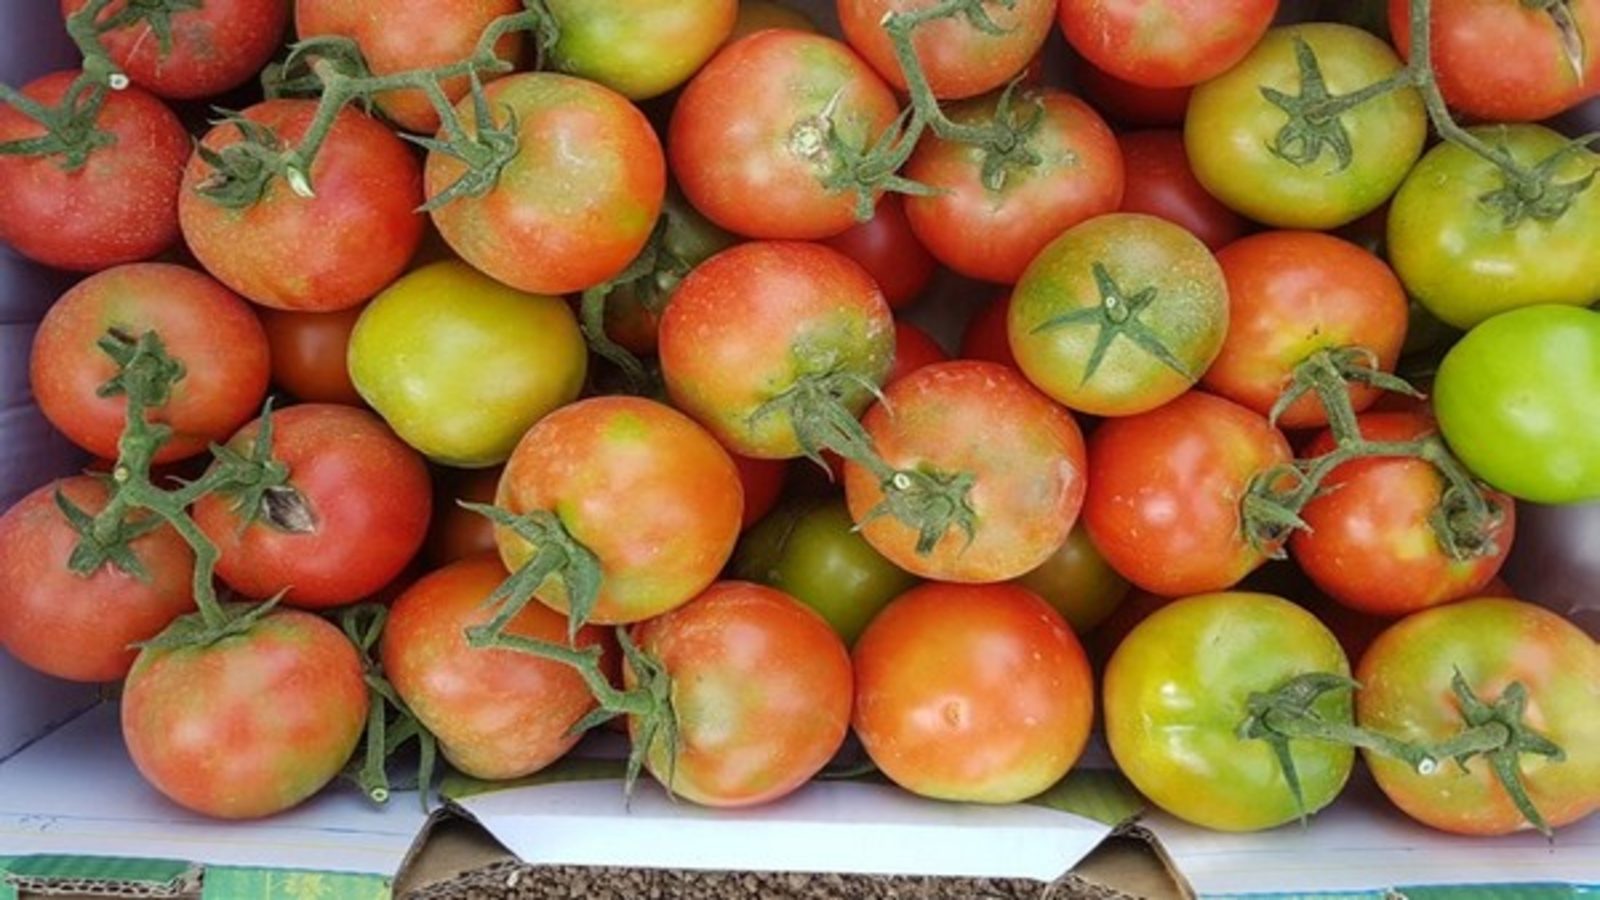 ToMV - Tomato Price Hike In India